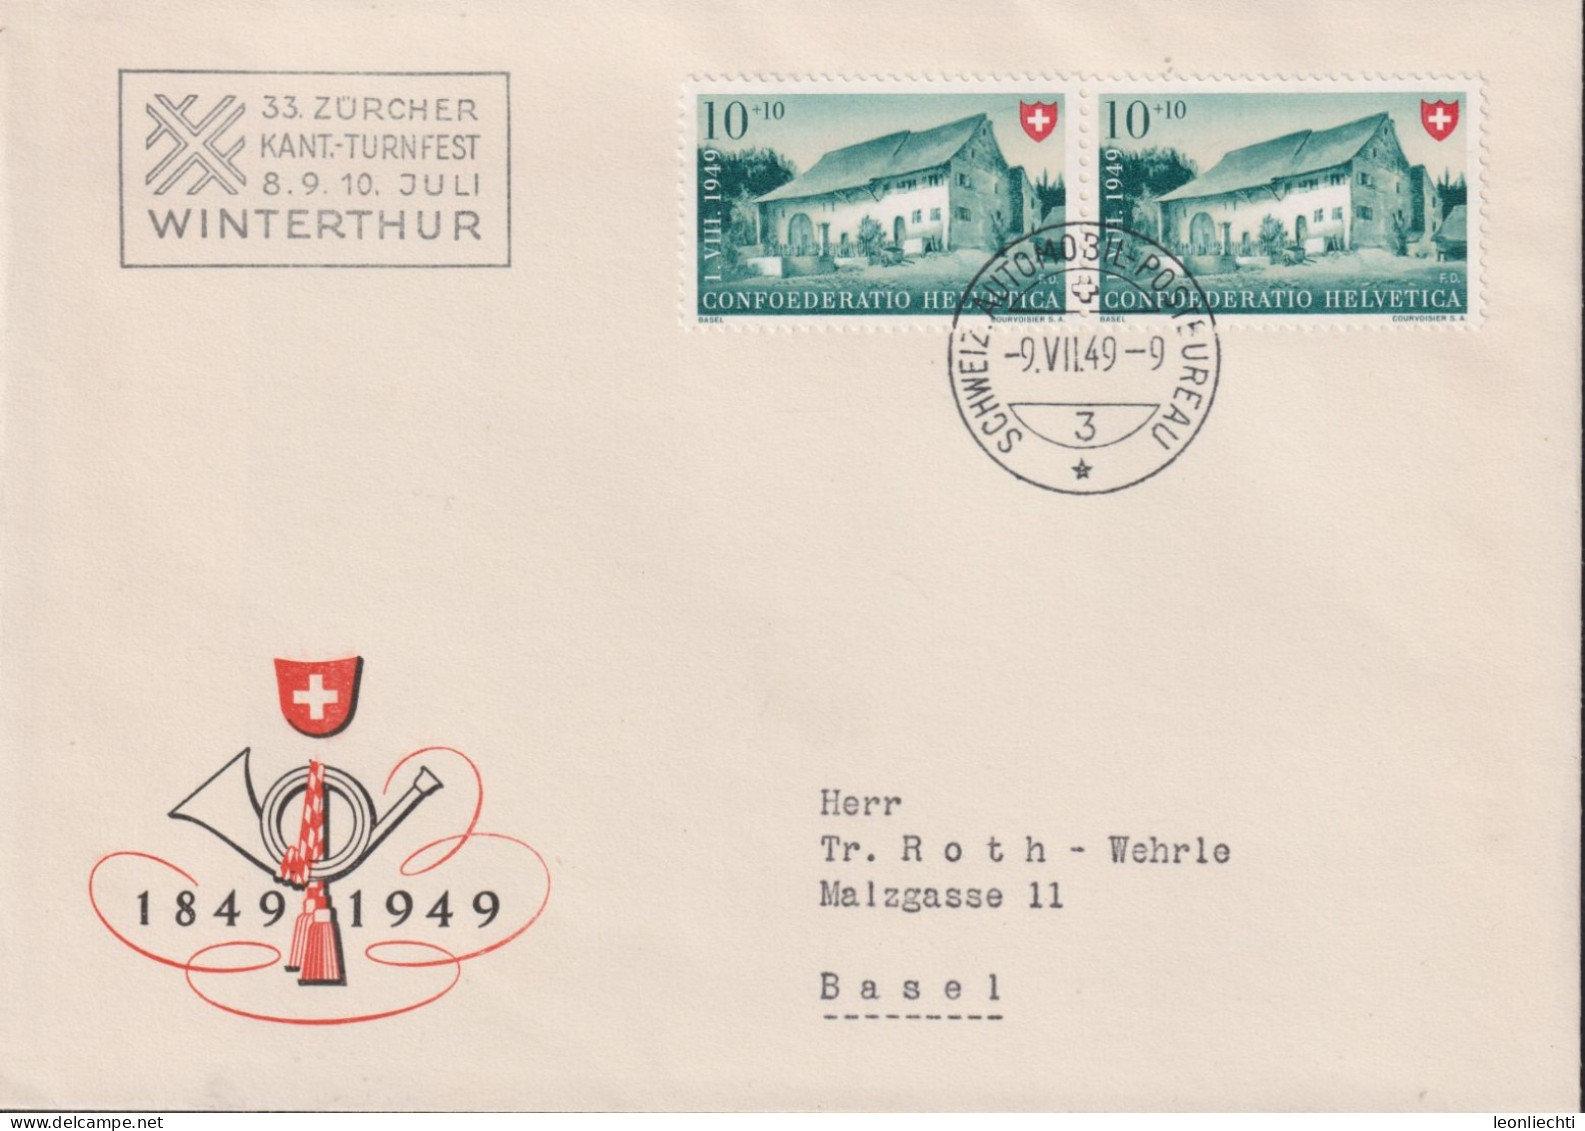 1949 Schweiz Pro Patria, Zum:CH B43, Mi:CH 526, Bauernhaus Im Baselbiet. (33.Zürcher Kant.-Turnfest Winterthur) - Covers & Documents